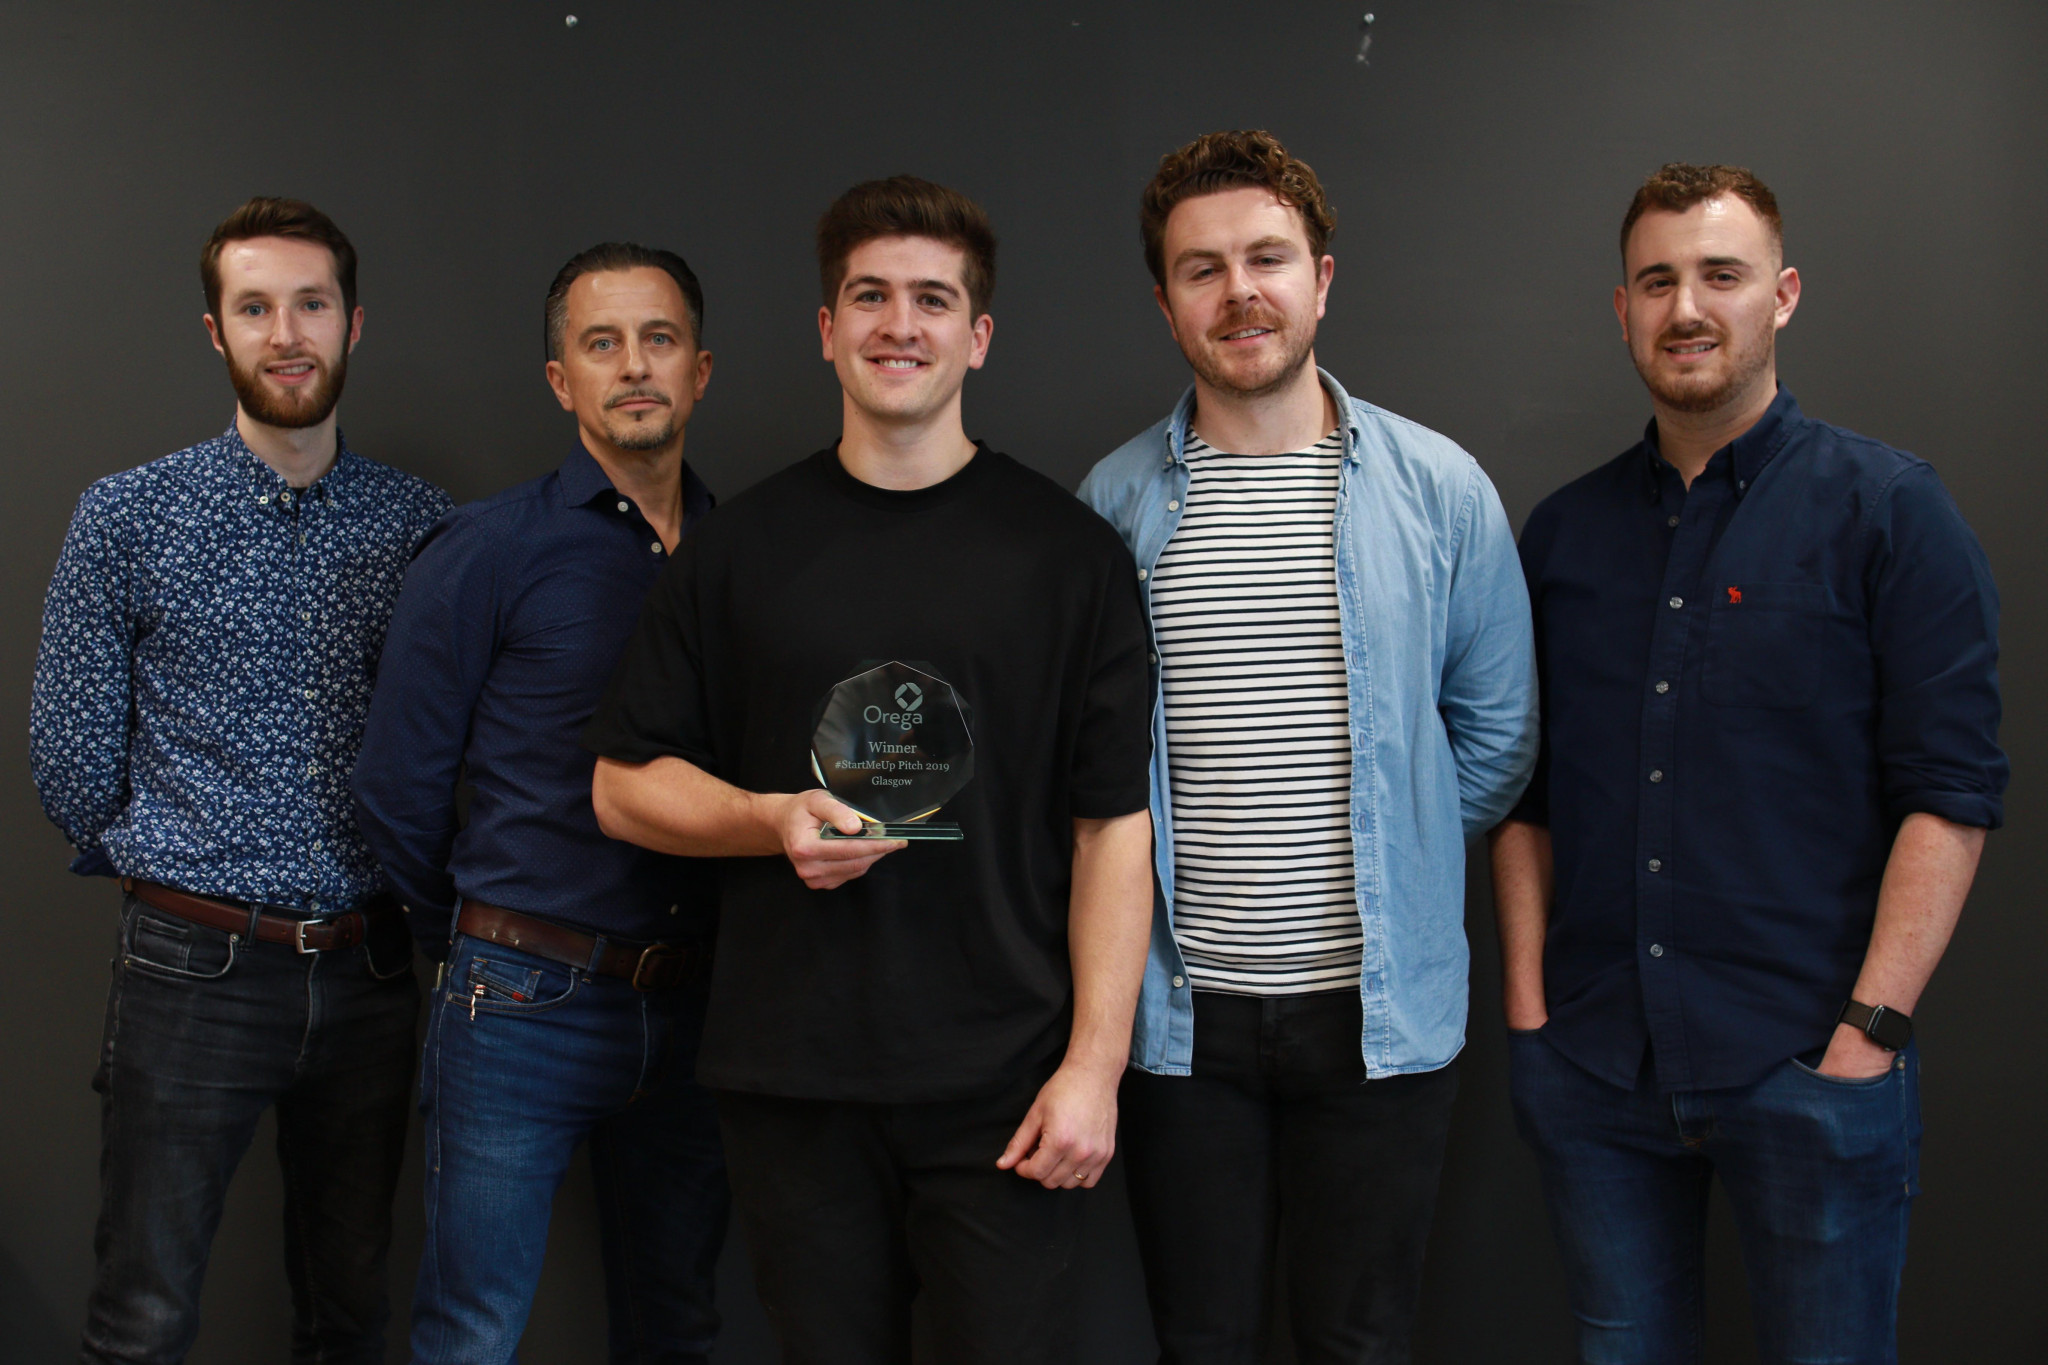 Hoko Design wins £10k prize after #StartMeUp pitch success